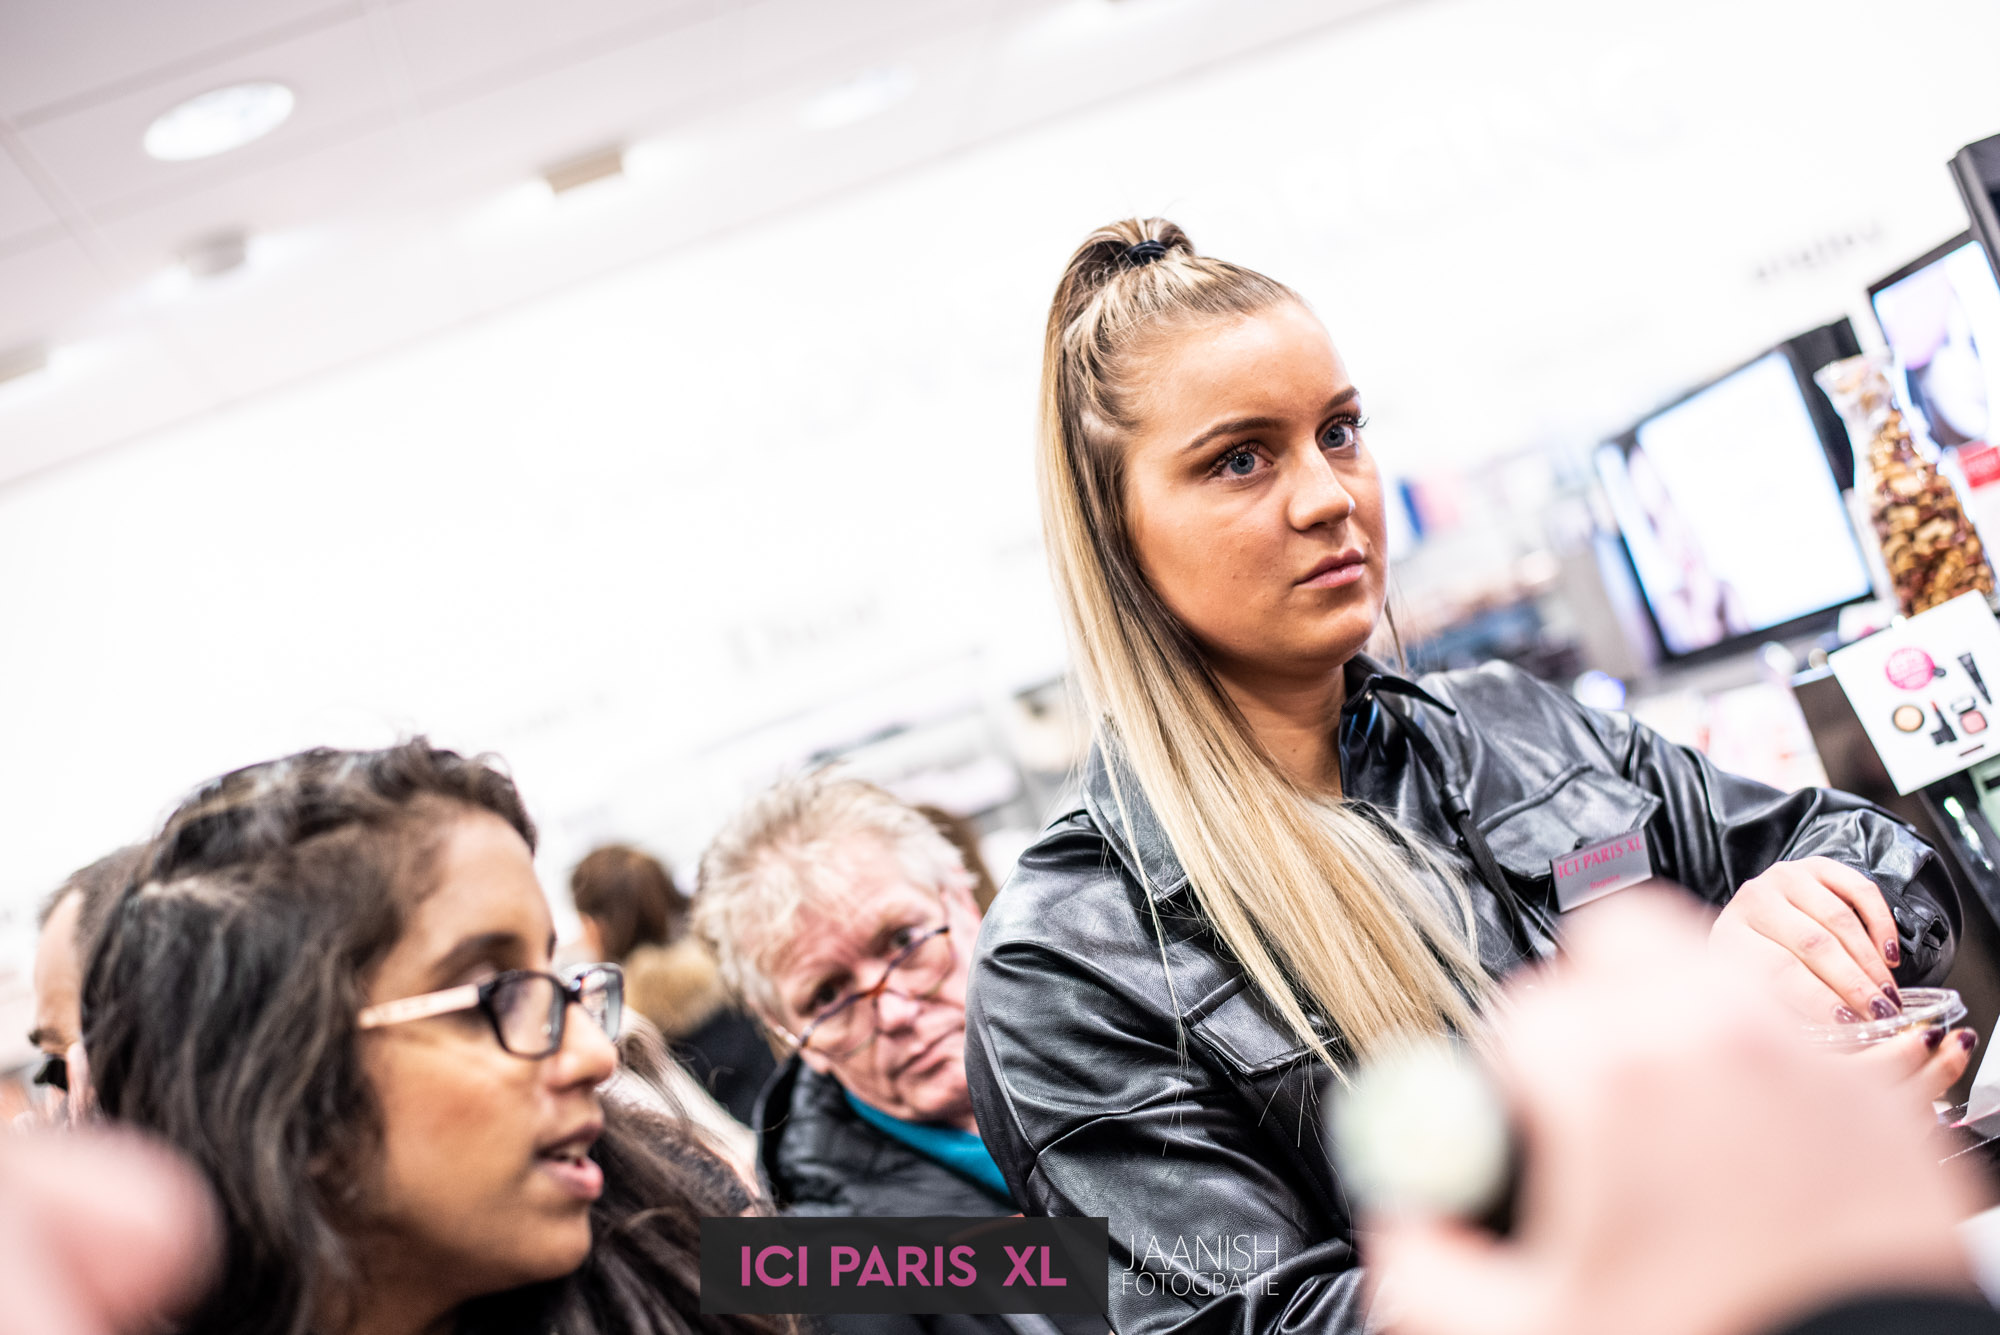 ICI Paris bedrijfsfeest evenement fotograaf in den haag 67